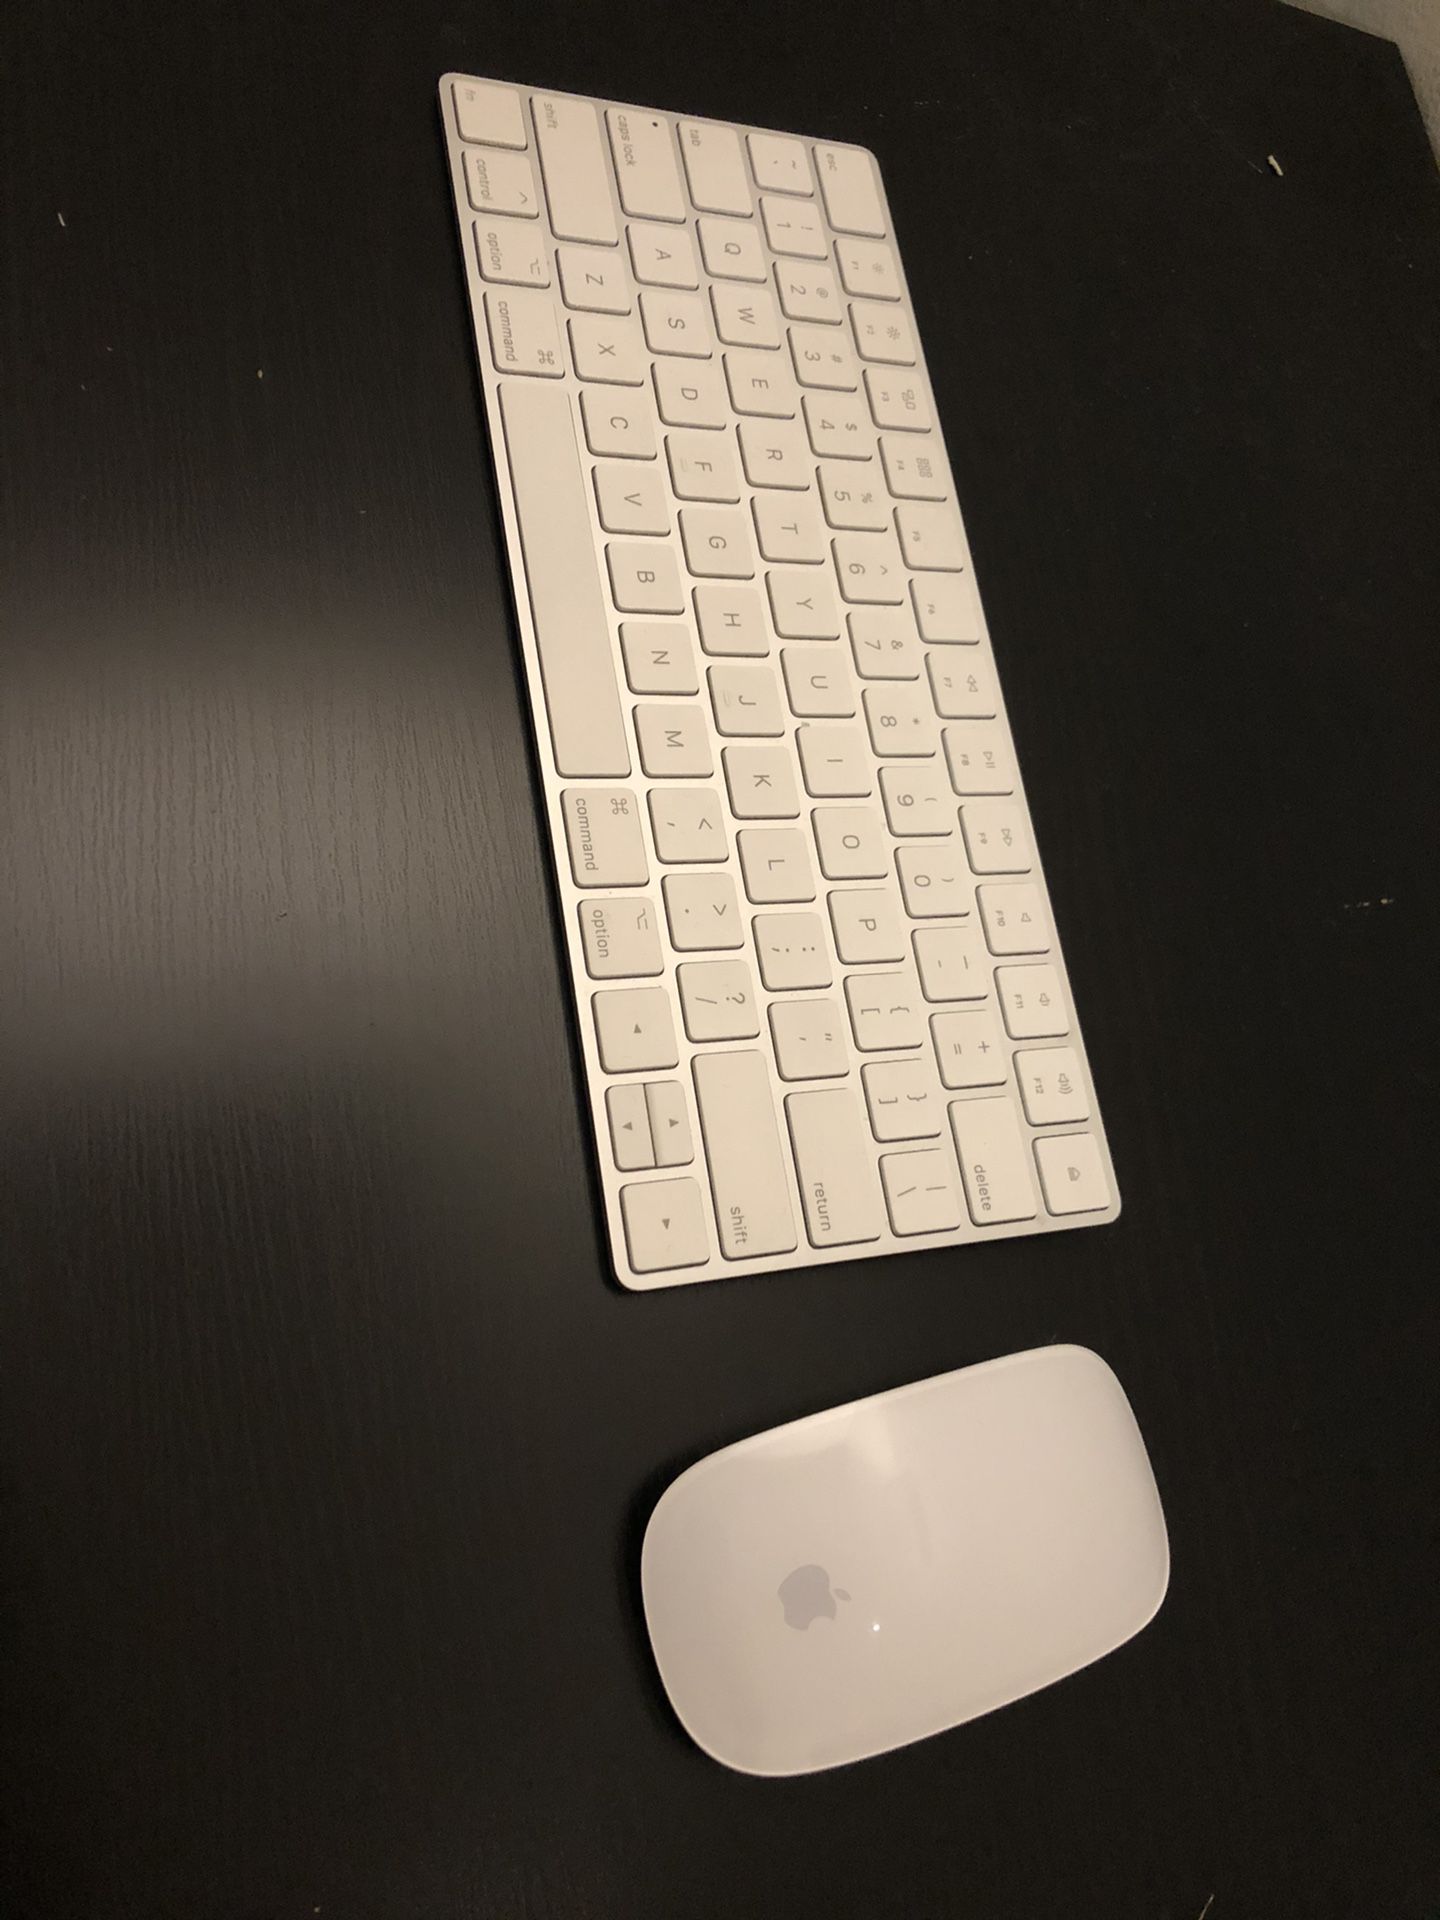 Apple Mouse & Keyboard Wireless